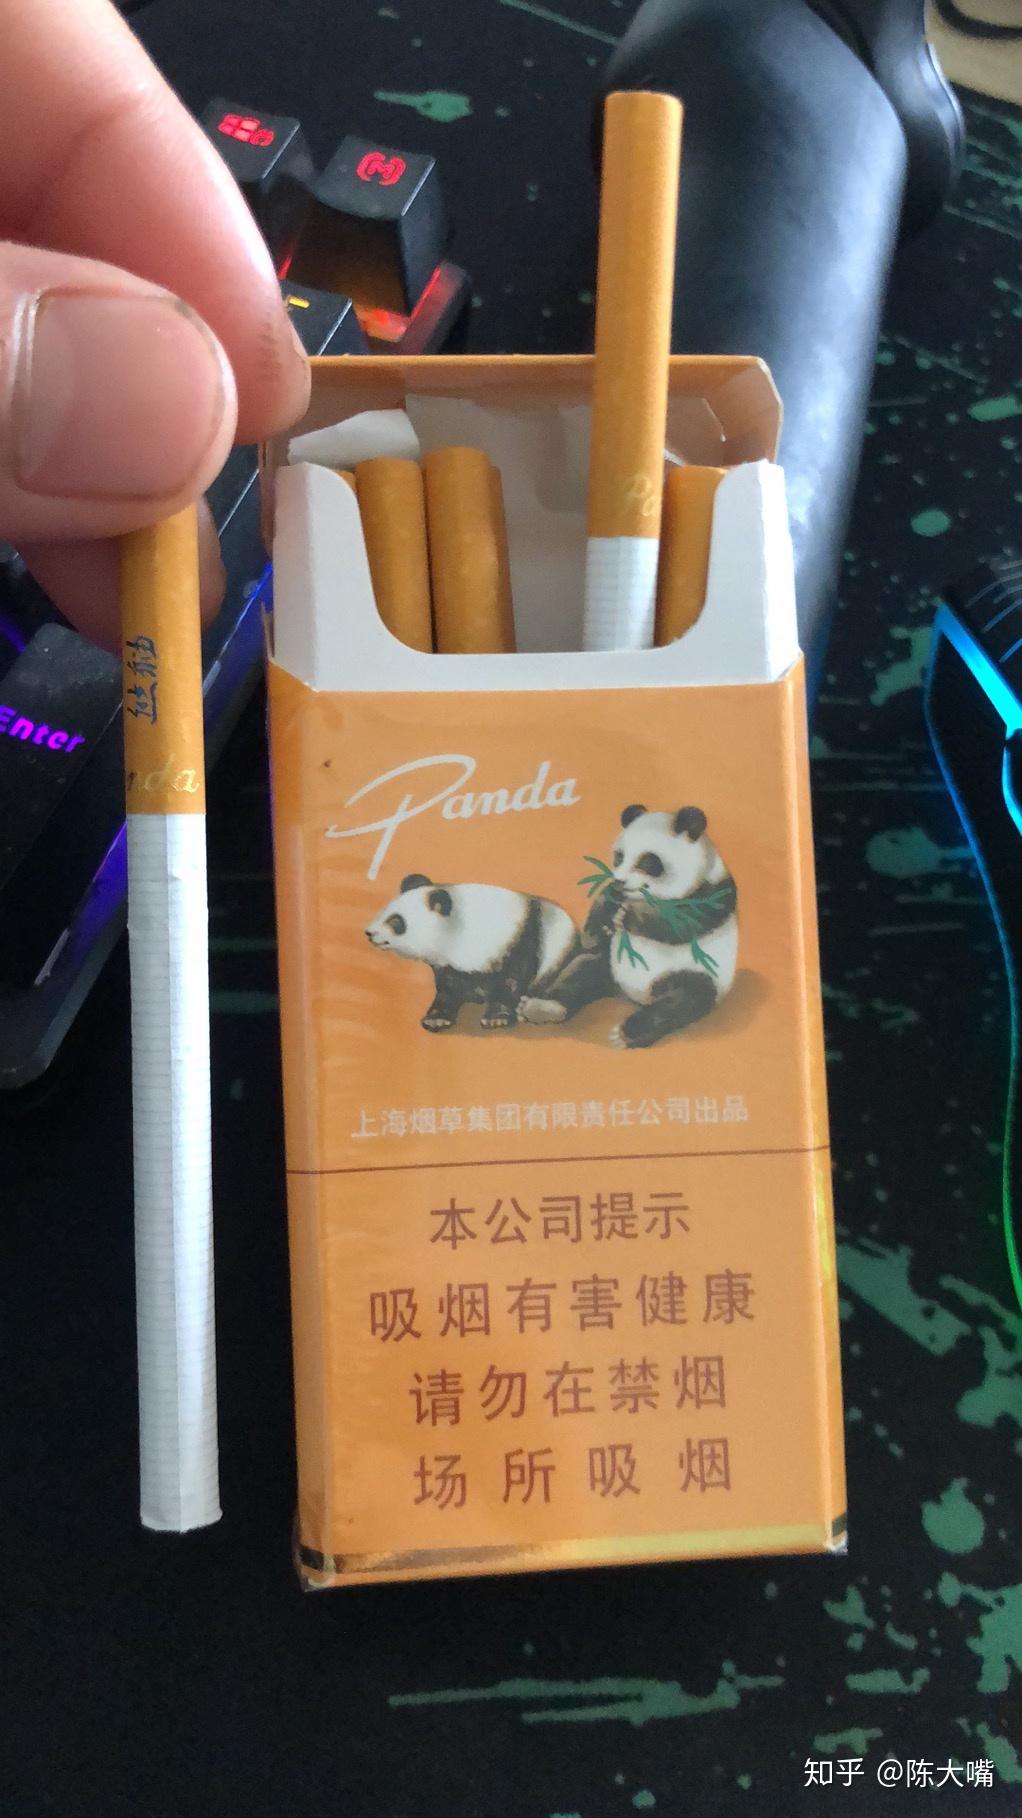 极品大熊猫烟图片价钱图片